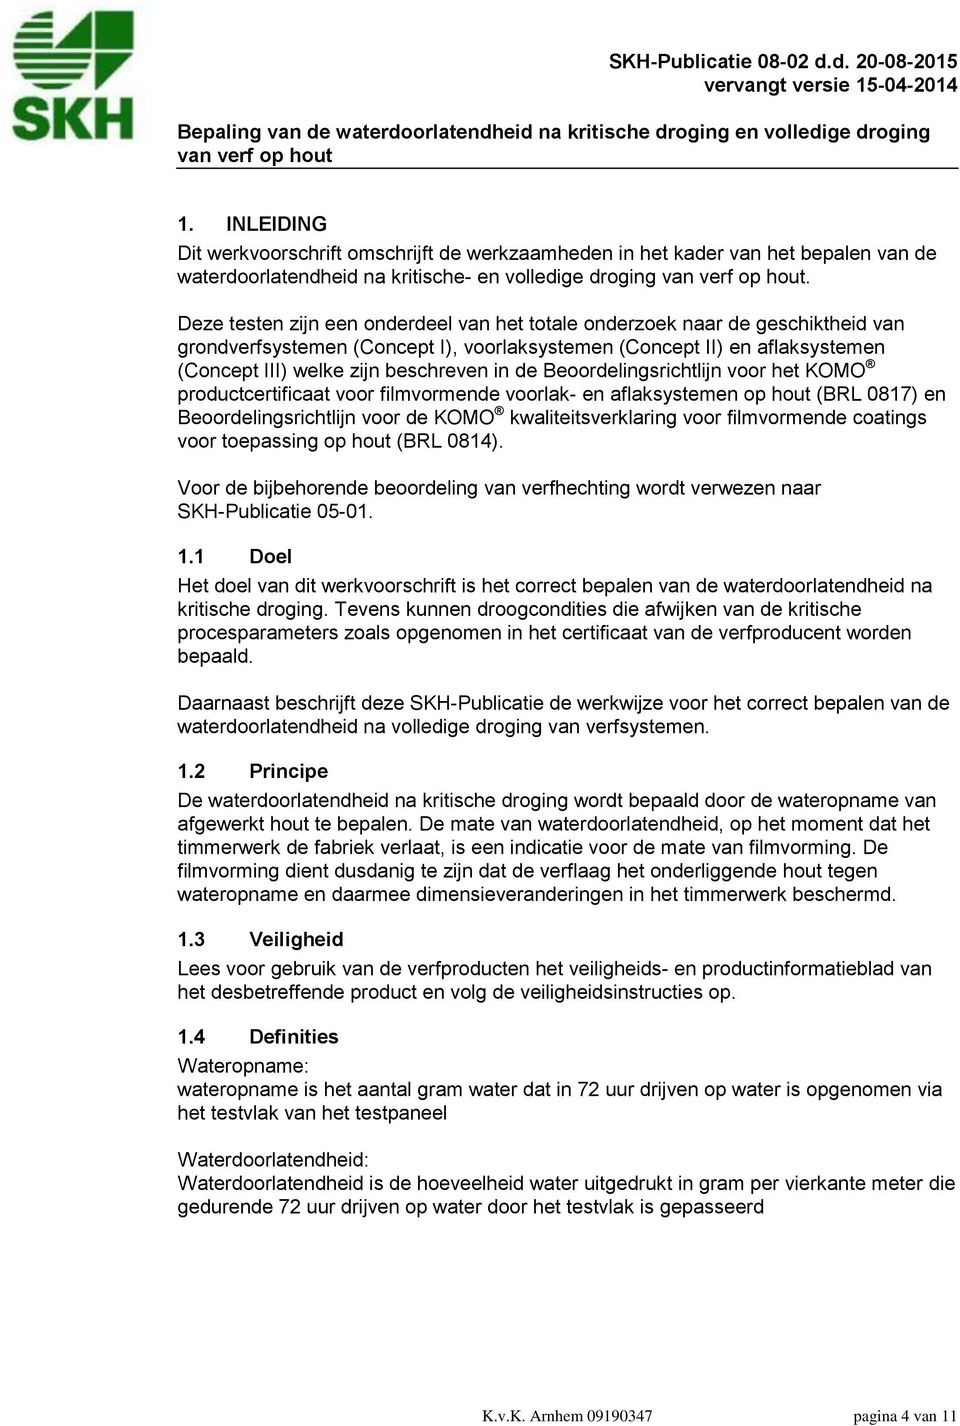 Beoordelingsrichtlijn voor het KOMO productcertificaat voor filmvormende voorlak- en aflaksystemen op hout (BRL 0817) en Beoordelingsrichtlijn voor de KOMO kwaliteitsverklaring voor filmvormende